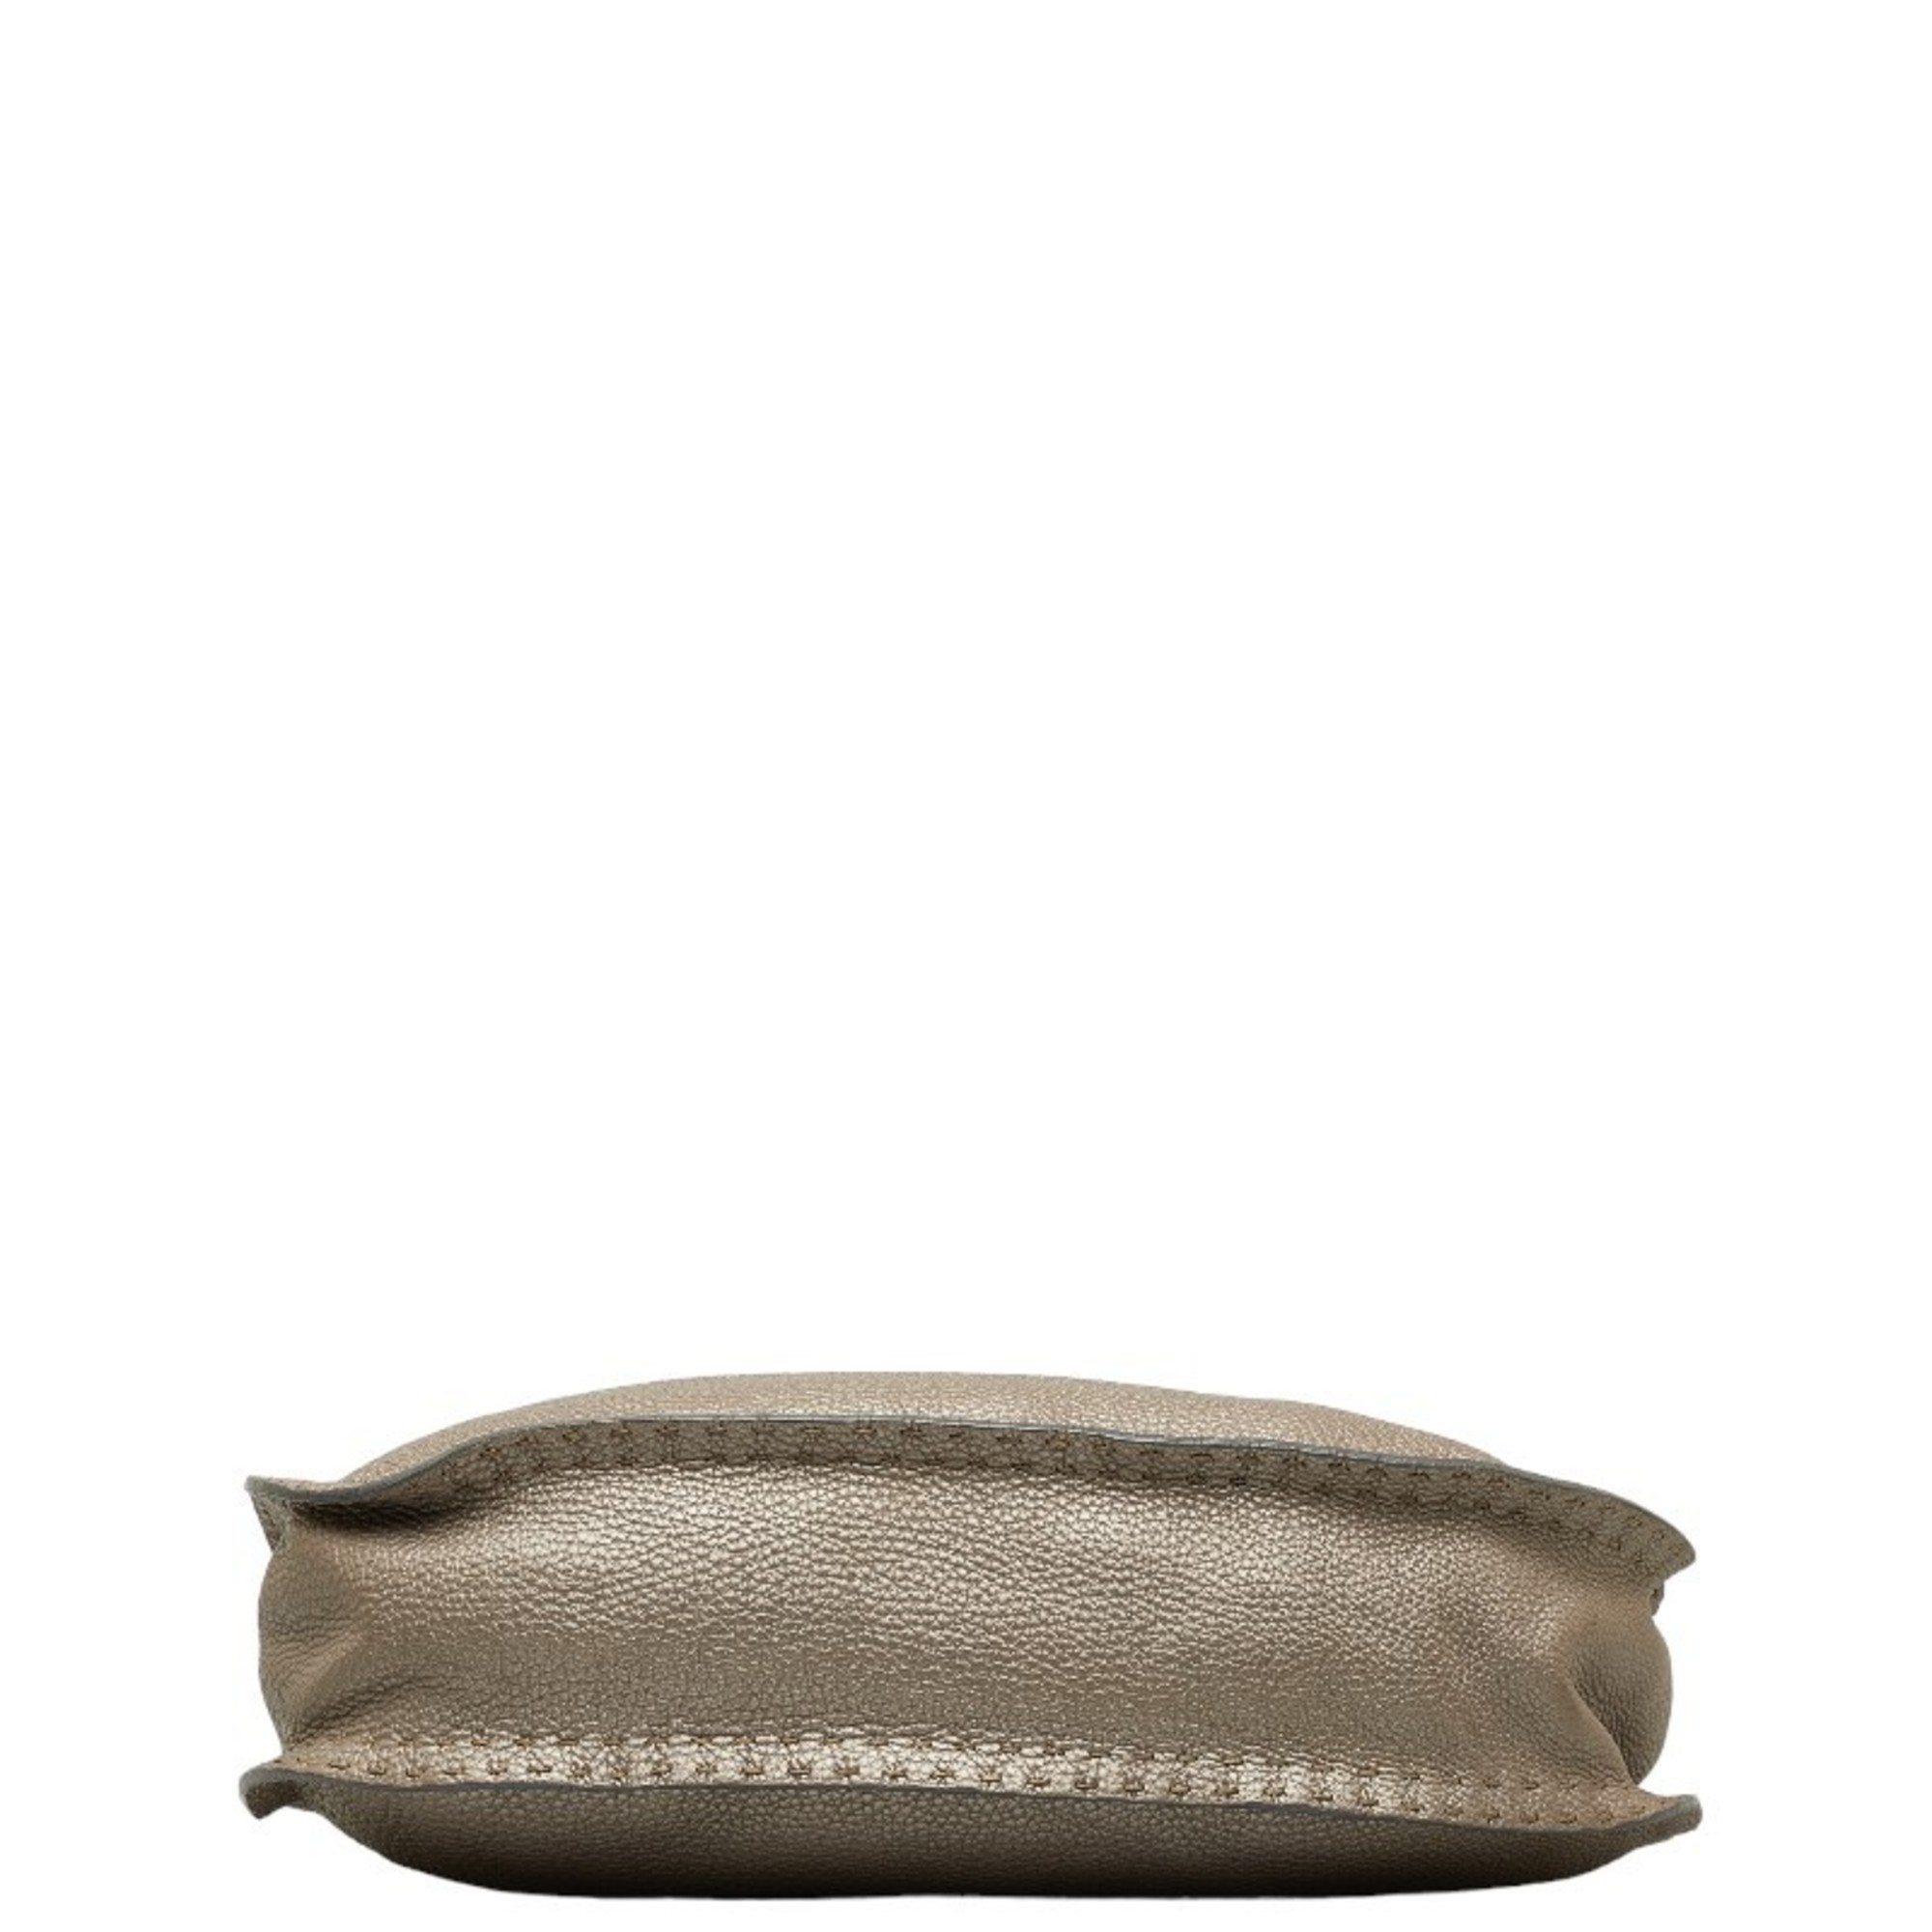 FENDI Selleria shoulder bag metallic grey leather women's